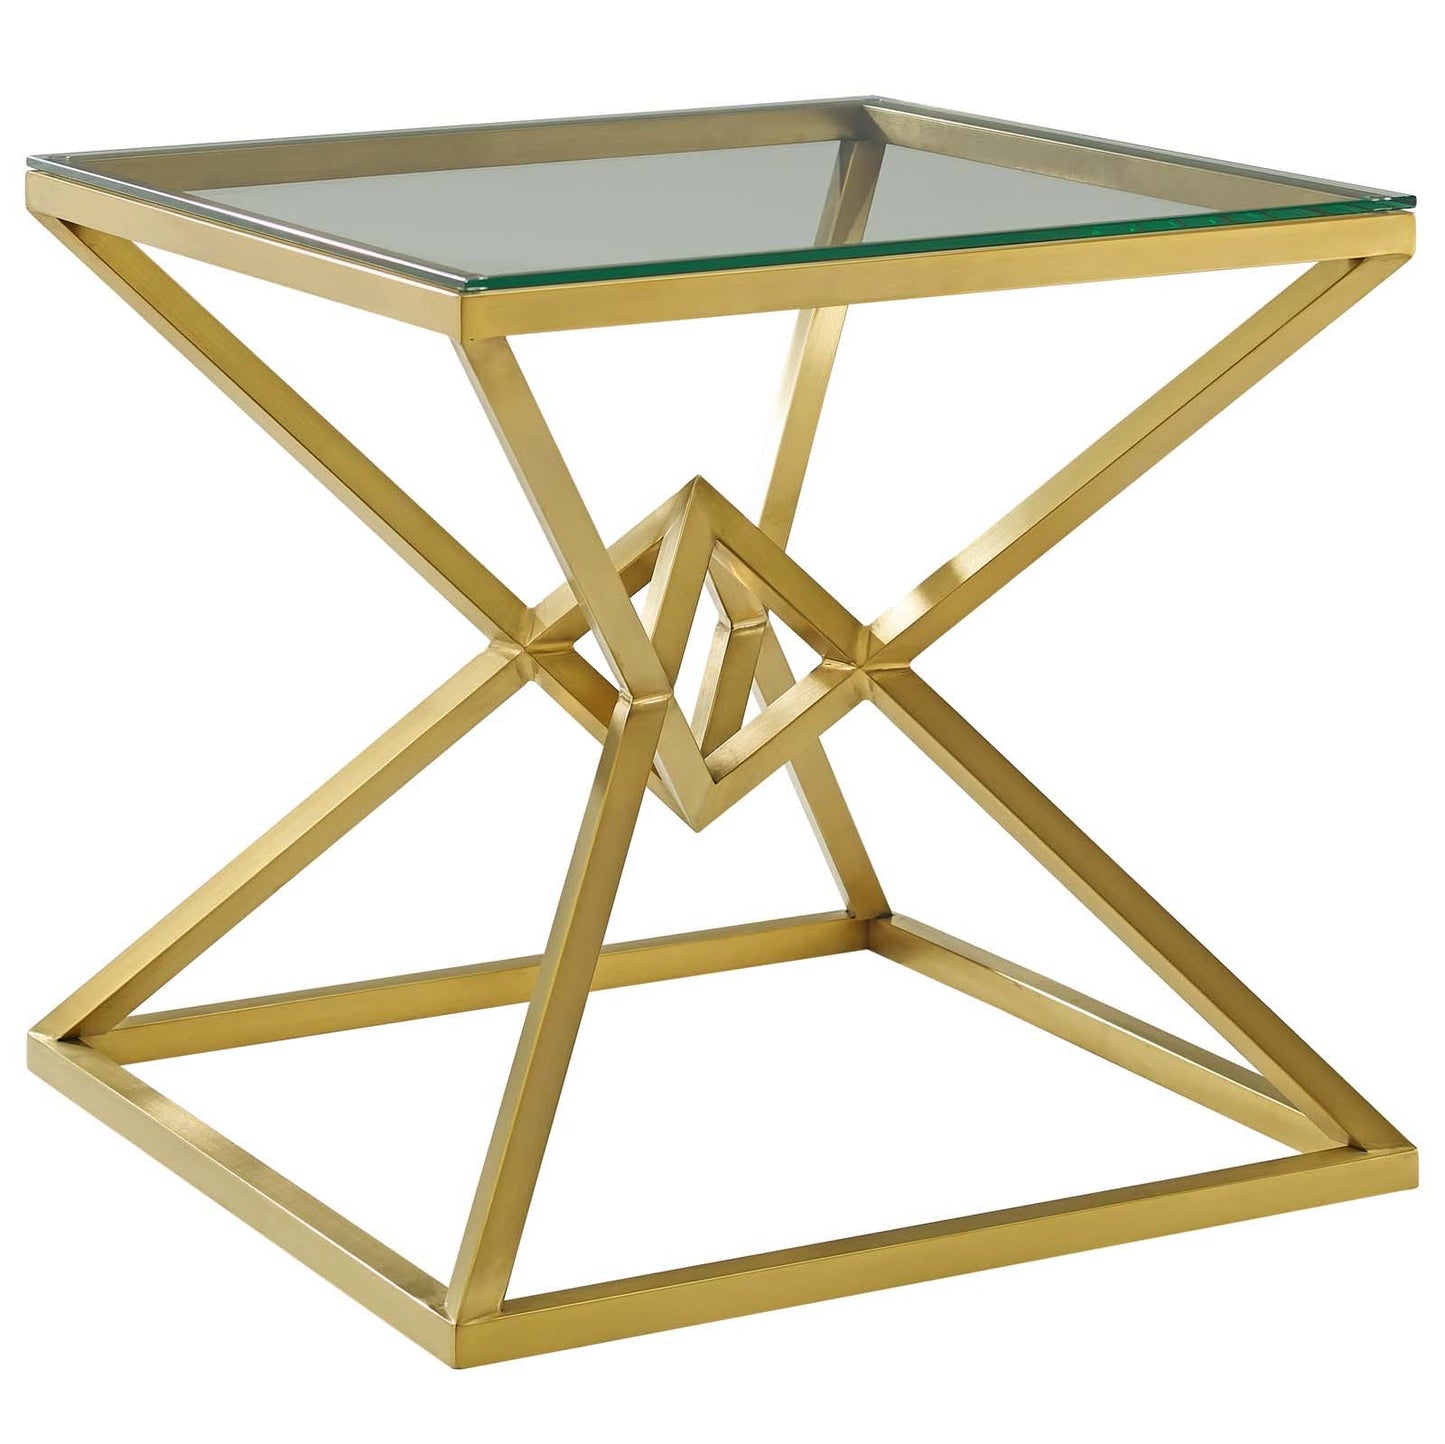 ANGULAR GOLD METAL GLASS TABLE TOP SIDE TABLE